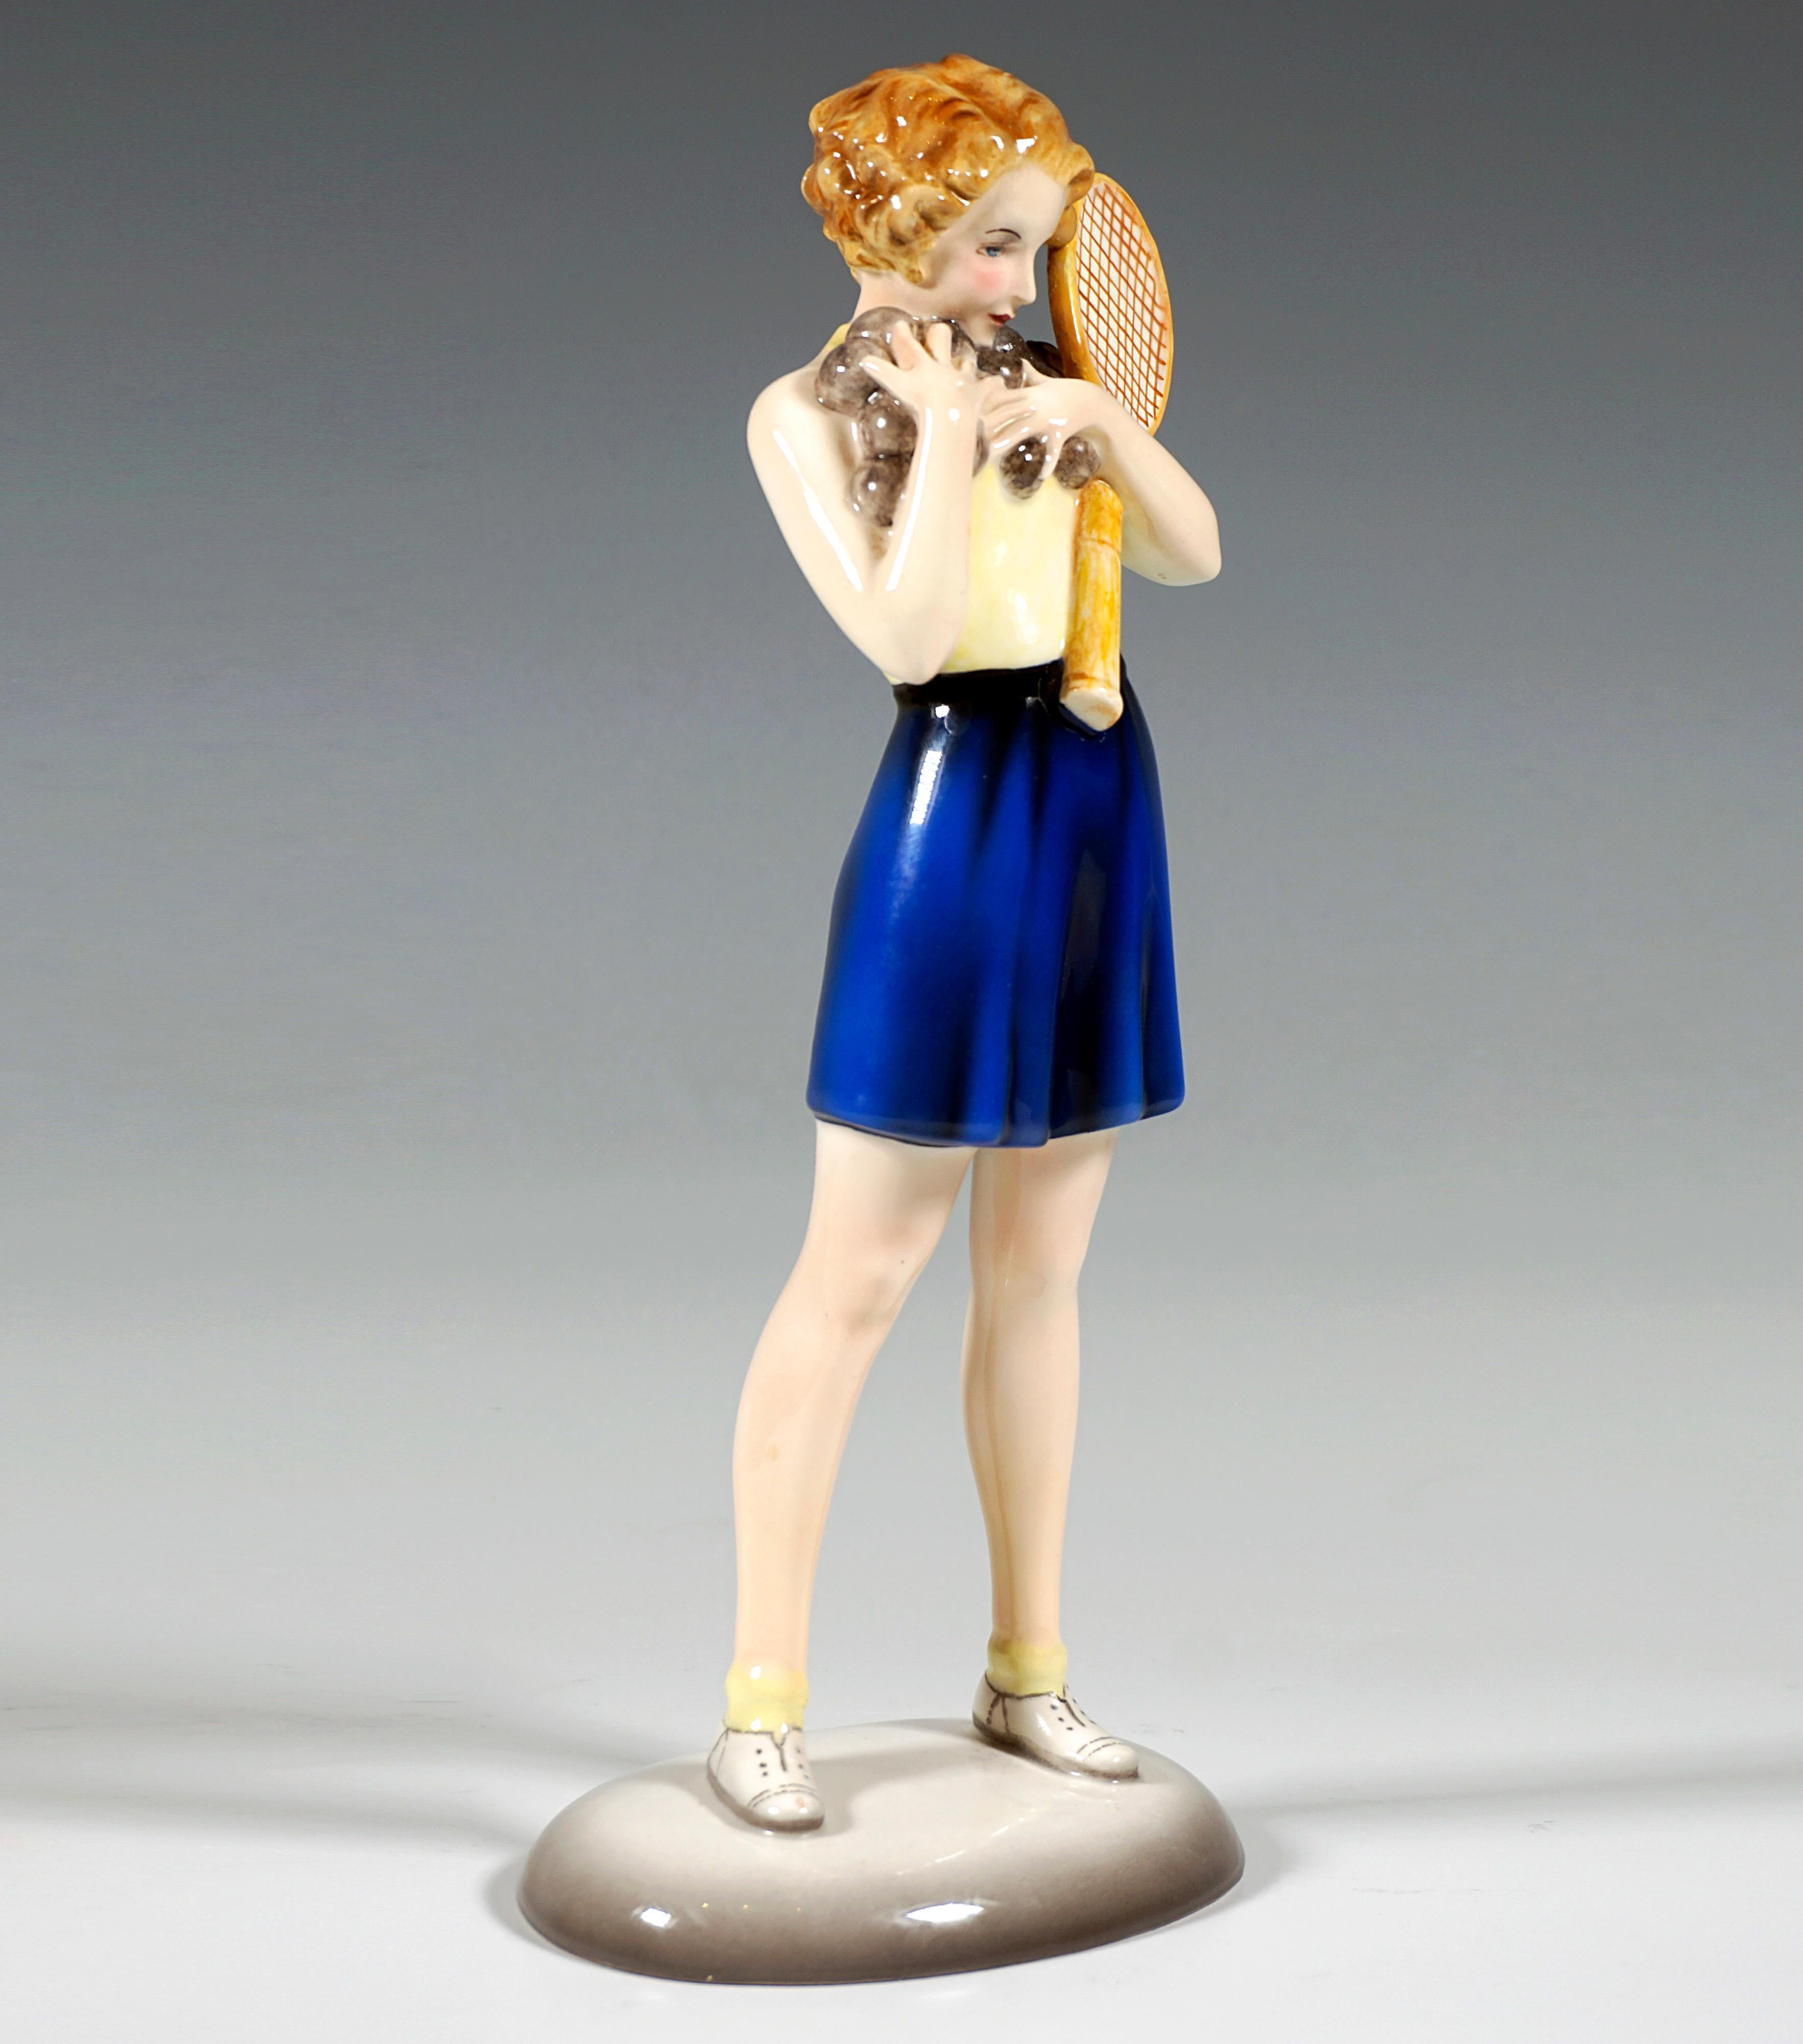 Sehr seltene Goldscheider Wien Keramik Figur aus den 1930er Jahren:
Junges Mädchen in Tenniskleidung: rückenfreies helles Oberteil, dunkelblaue, weite, kurze Hose und weiße Tennisschuhe, breitbeinig stehend, mit beiden Händen eine Vielzahl von